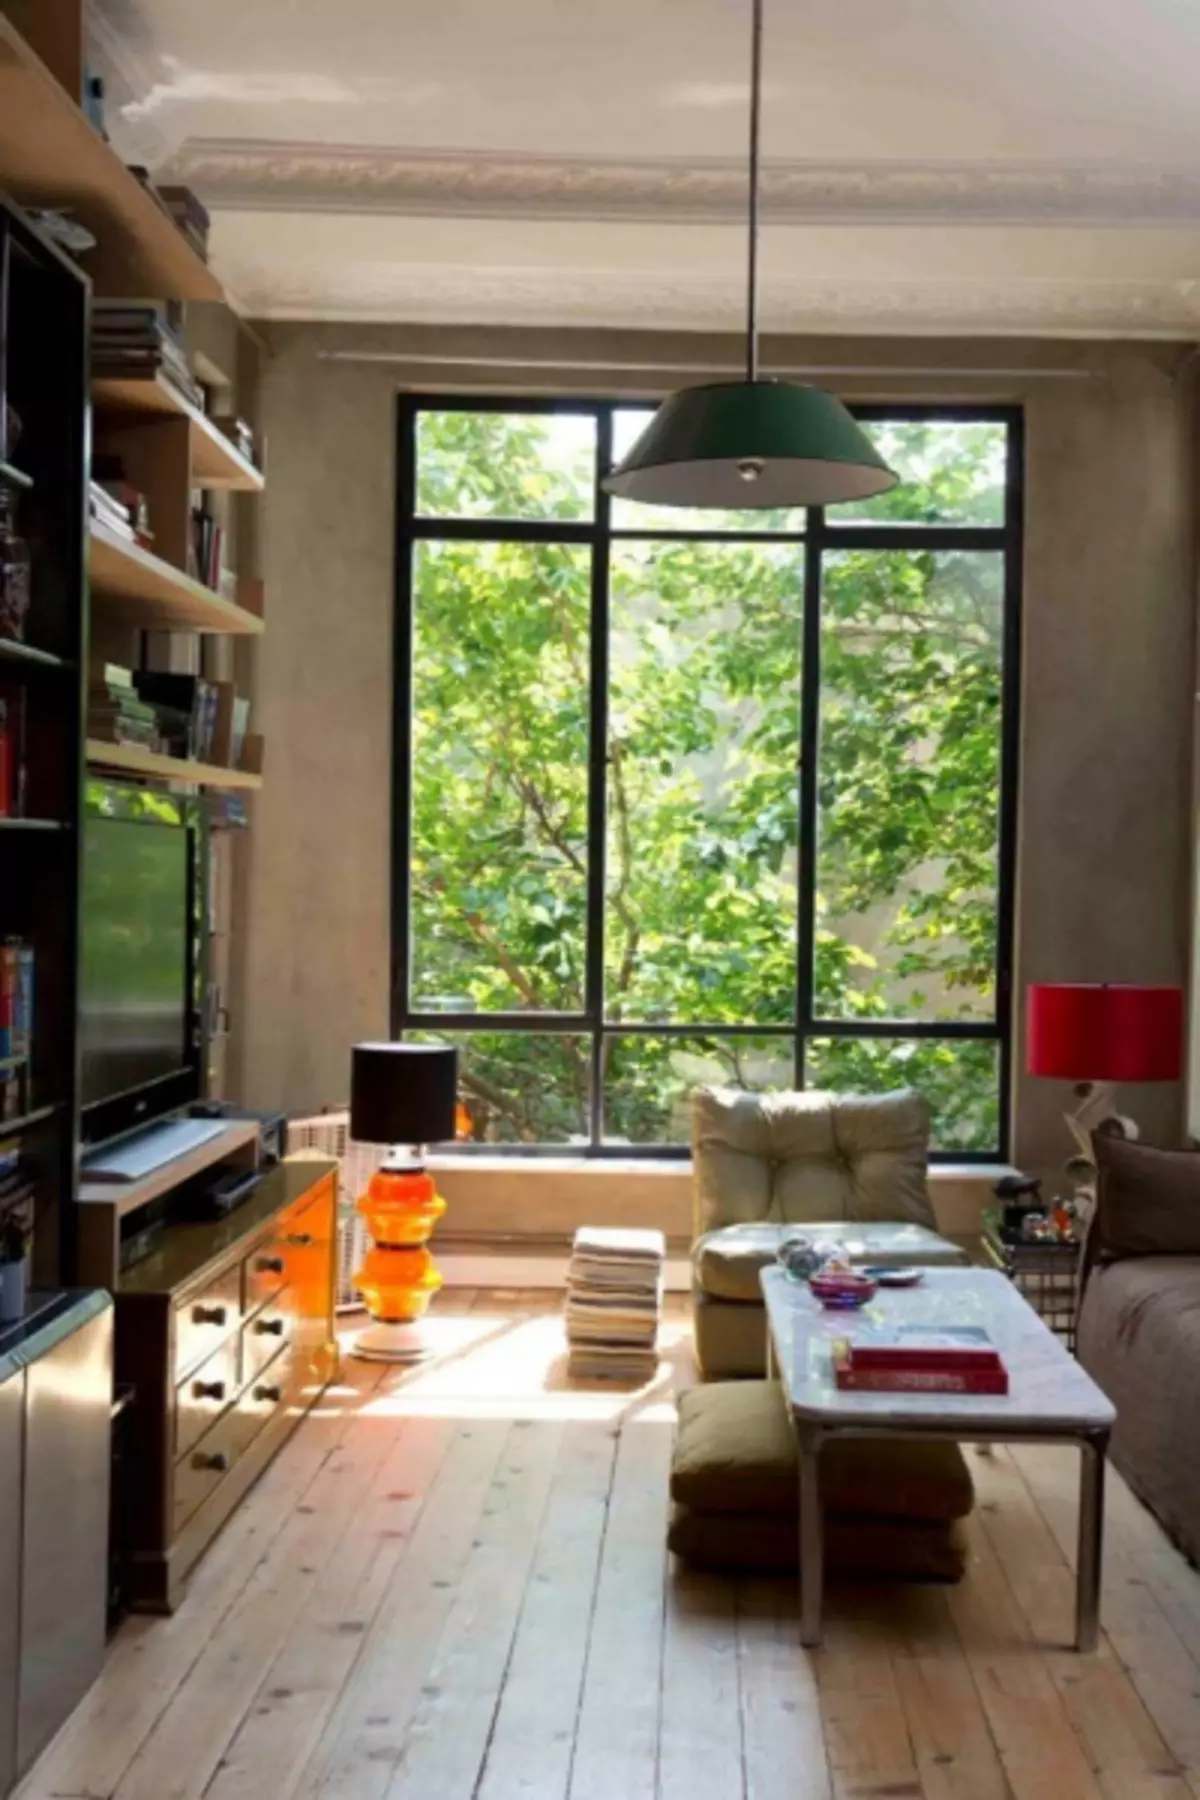 インテリア内のパノラマ窓：家の中のスペースとアパートのデザインでの使用のためのオプション（47写真）